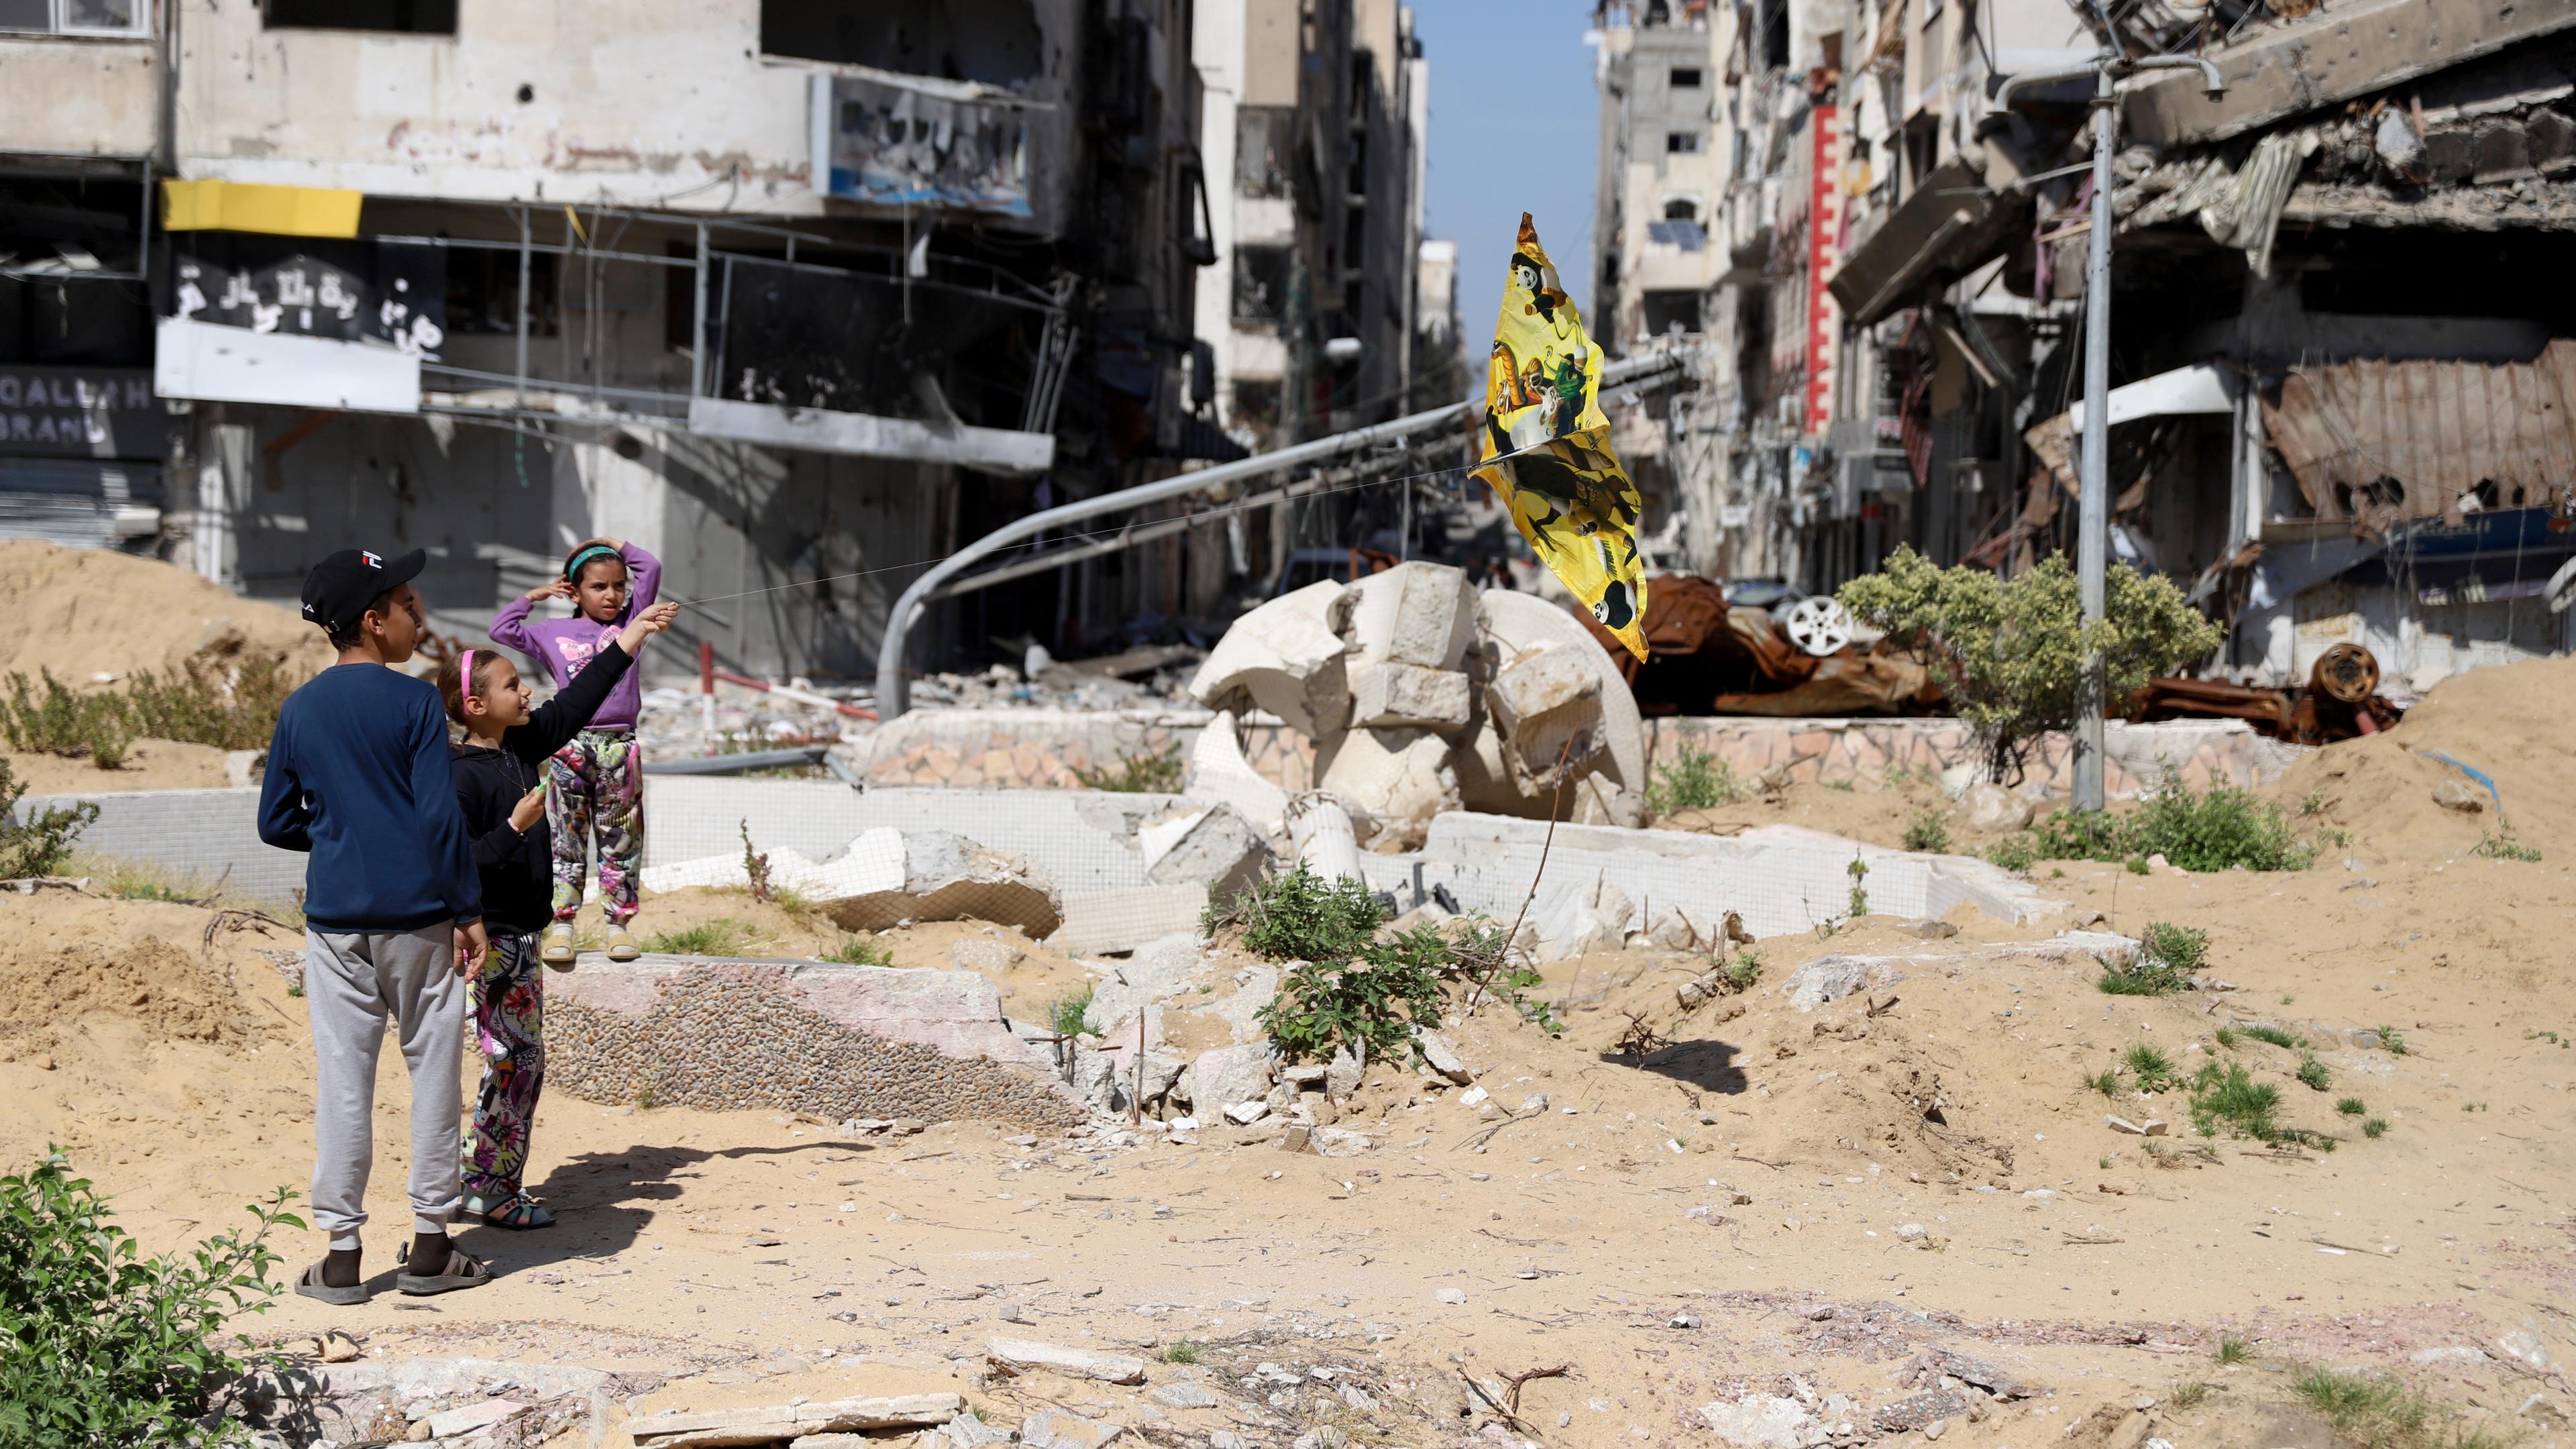 Kinder stehen in einer zerstörten Umgebung in Gazastadt.